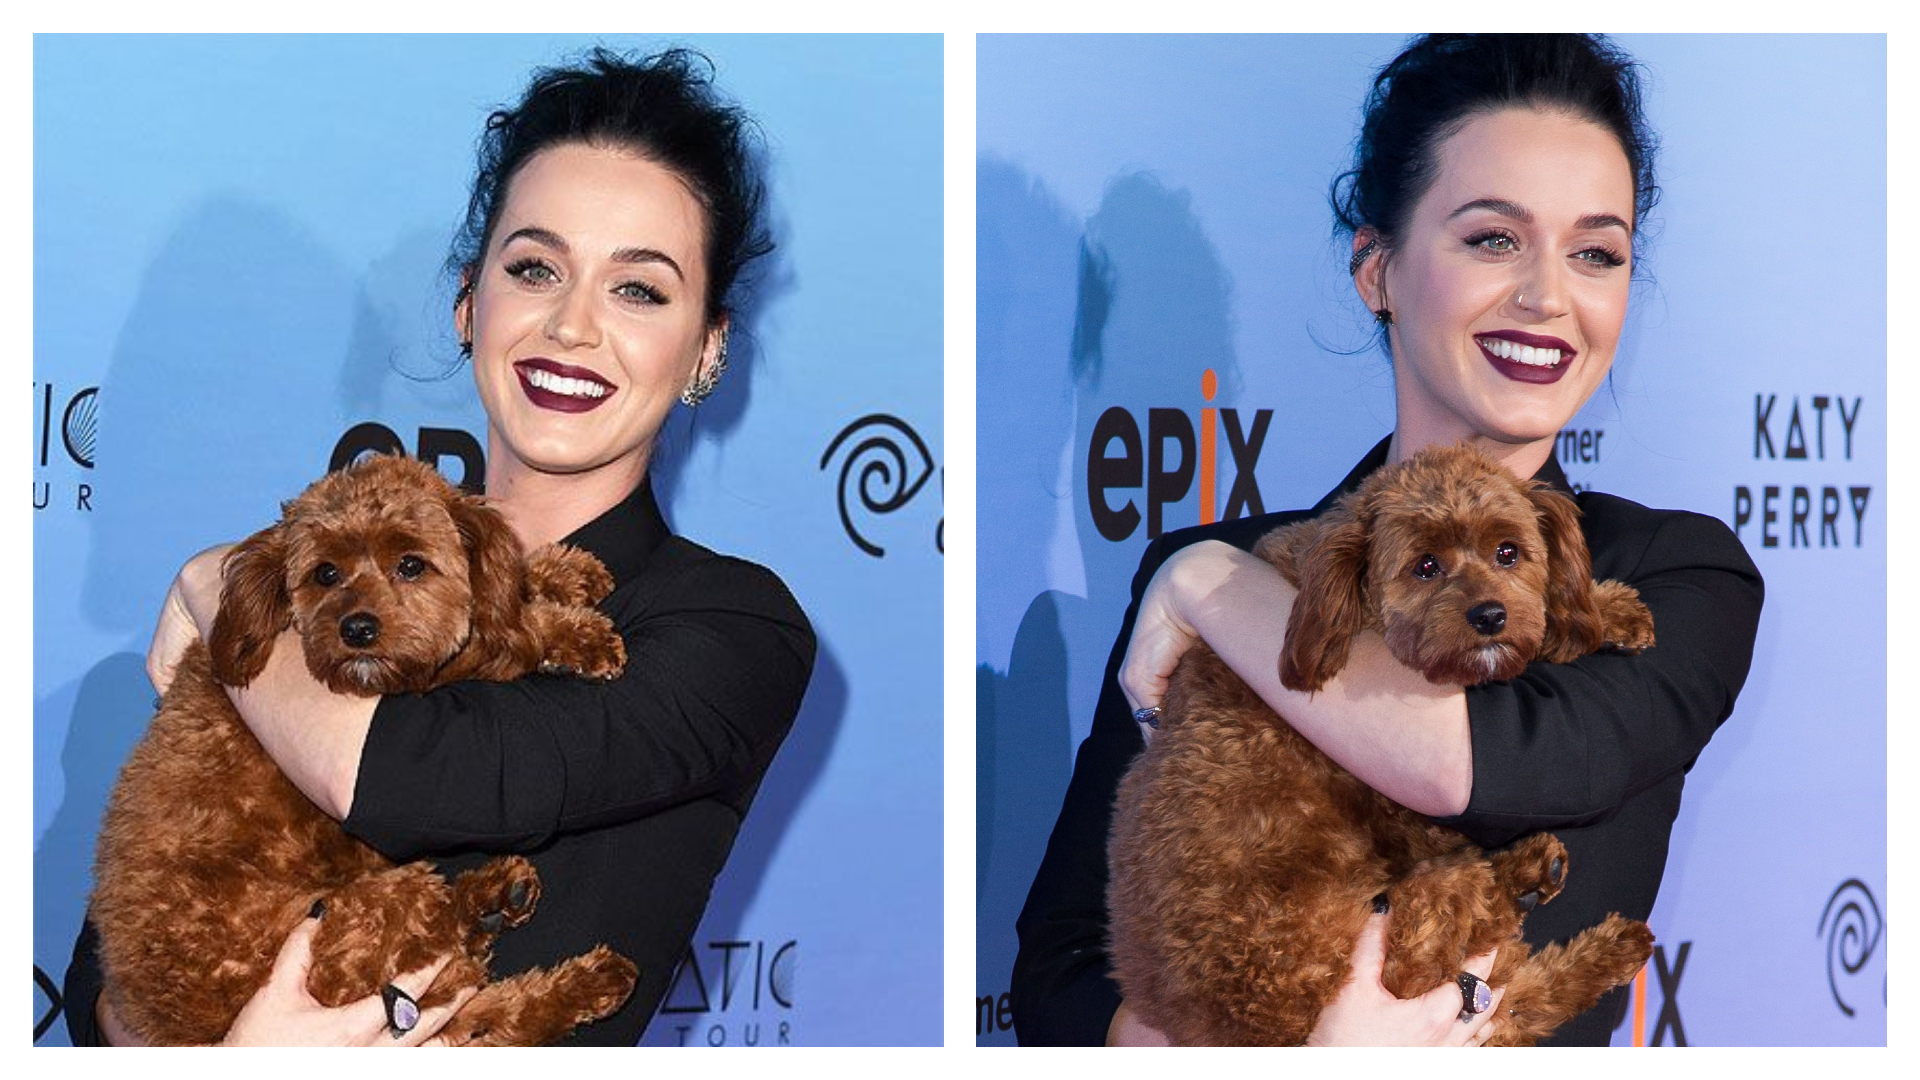 L'assistante de Katy Perry devient un héros après avoir sauvé le chien de la chanteuse